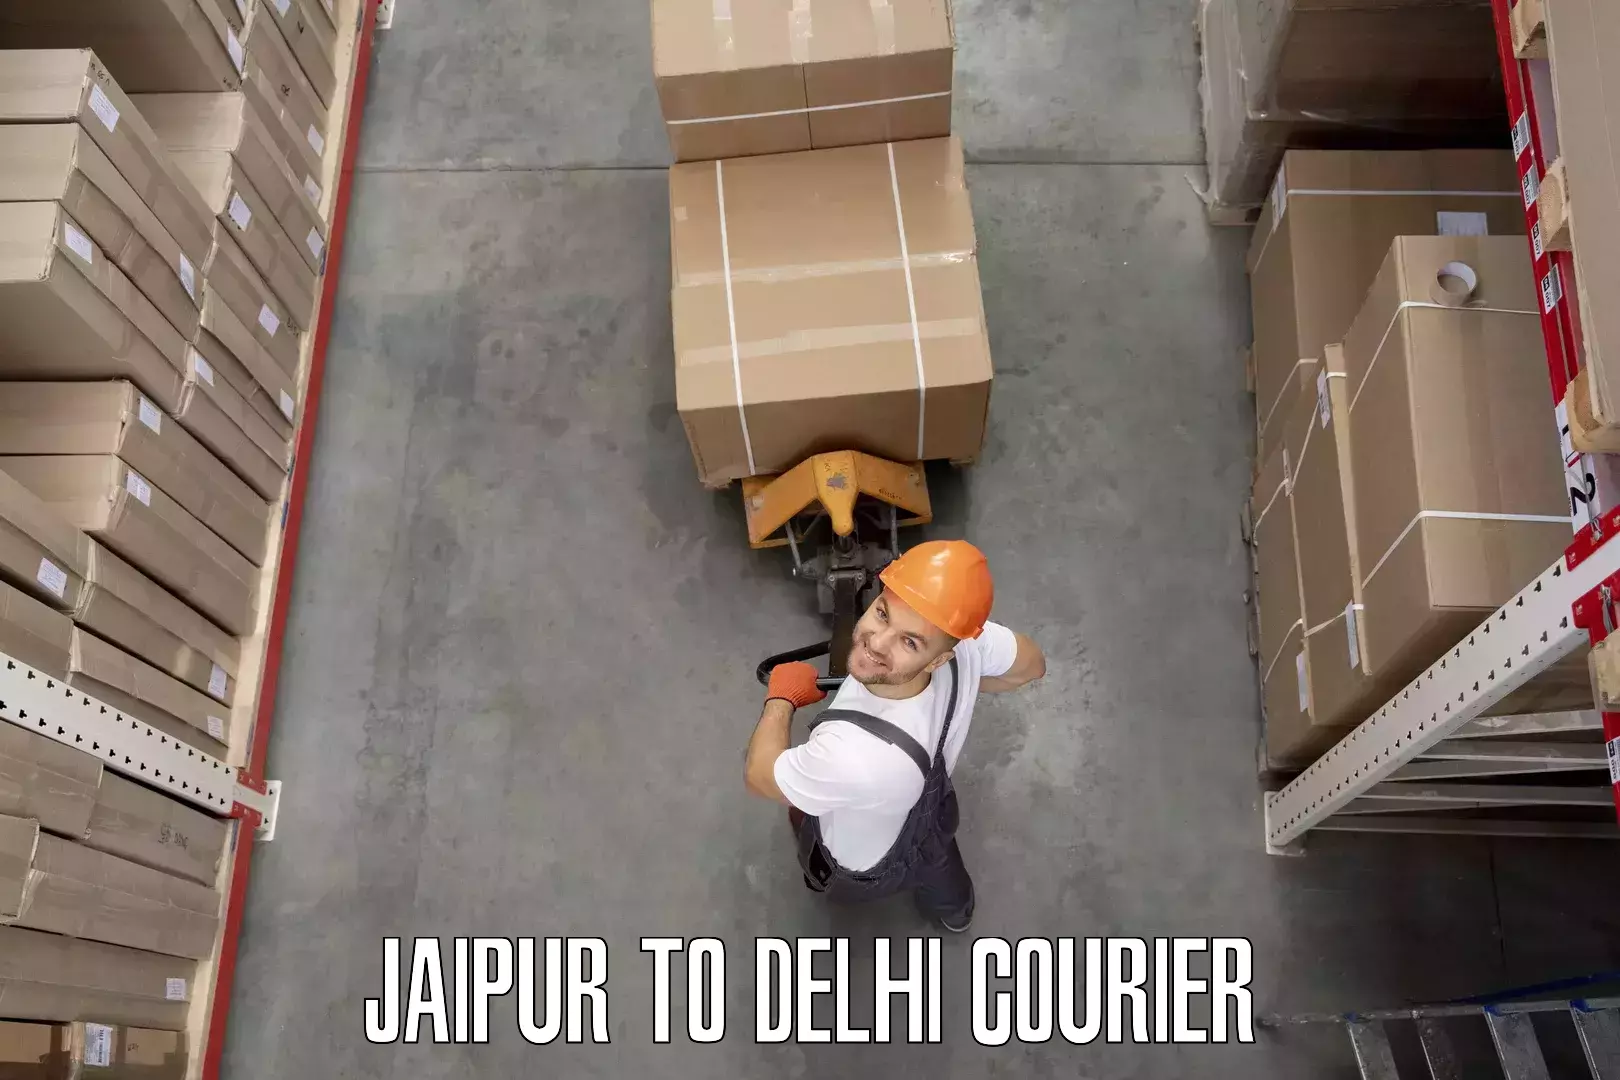 Furniture delivery service Jaipur to Kalkaji